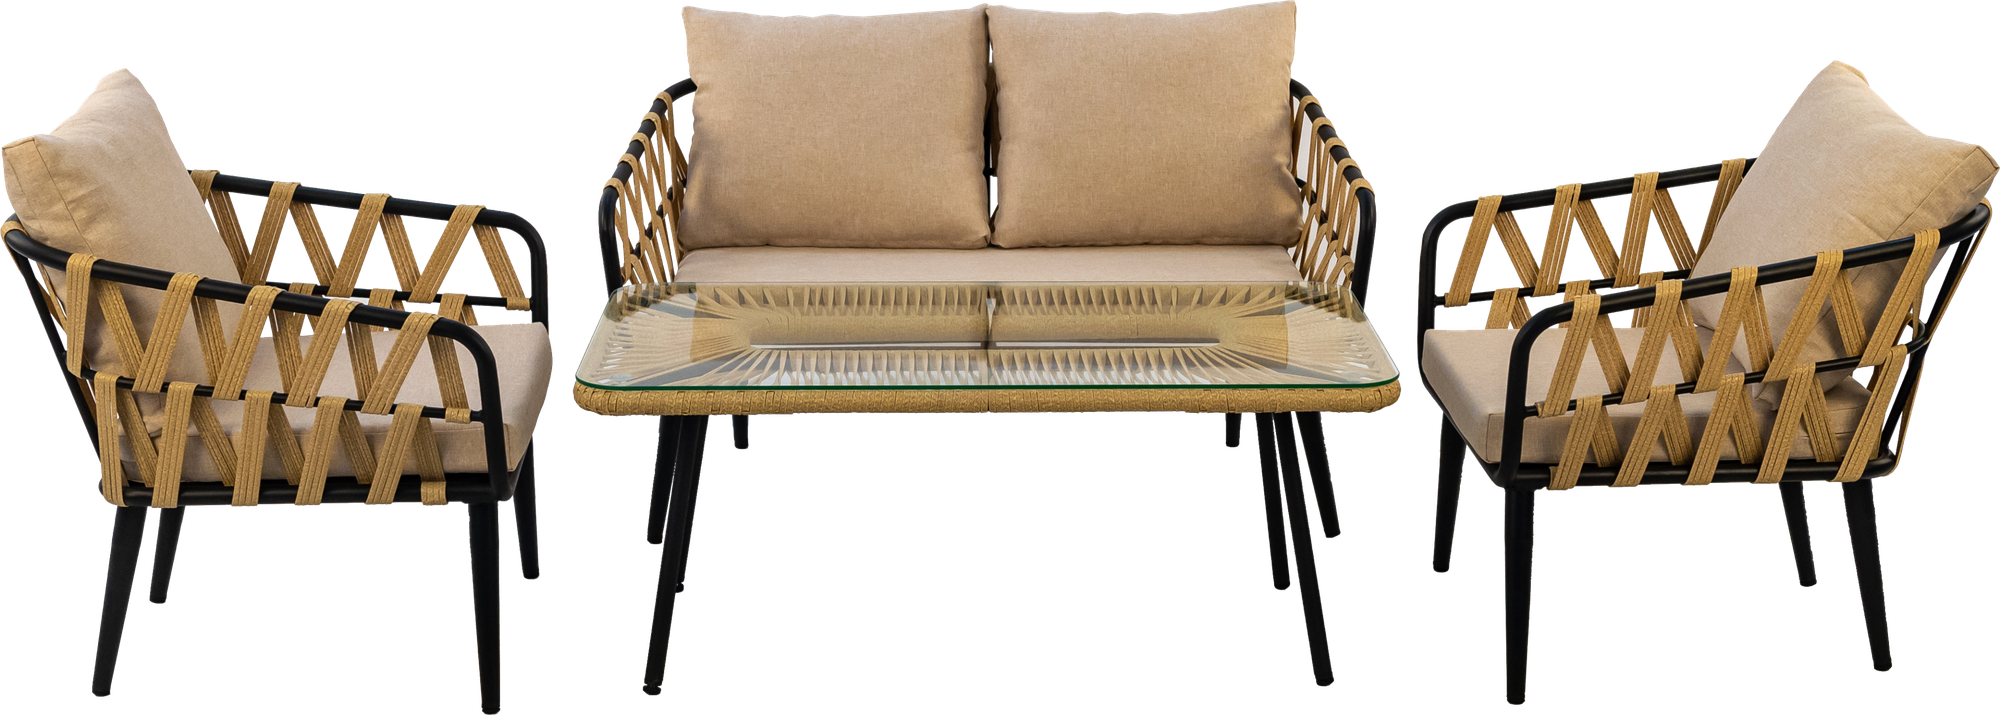 Комплект плетеной мебели из искусственного ротанга ALFART LIMA (диван 2-мест, 2 кресла, стол журнальный) грано